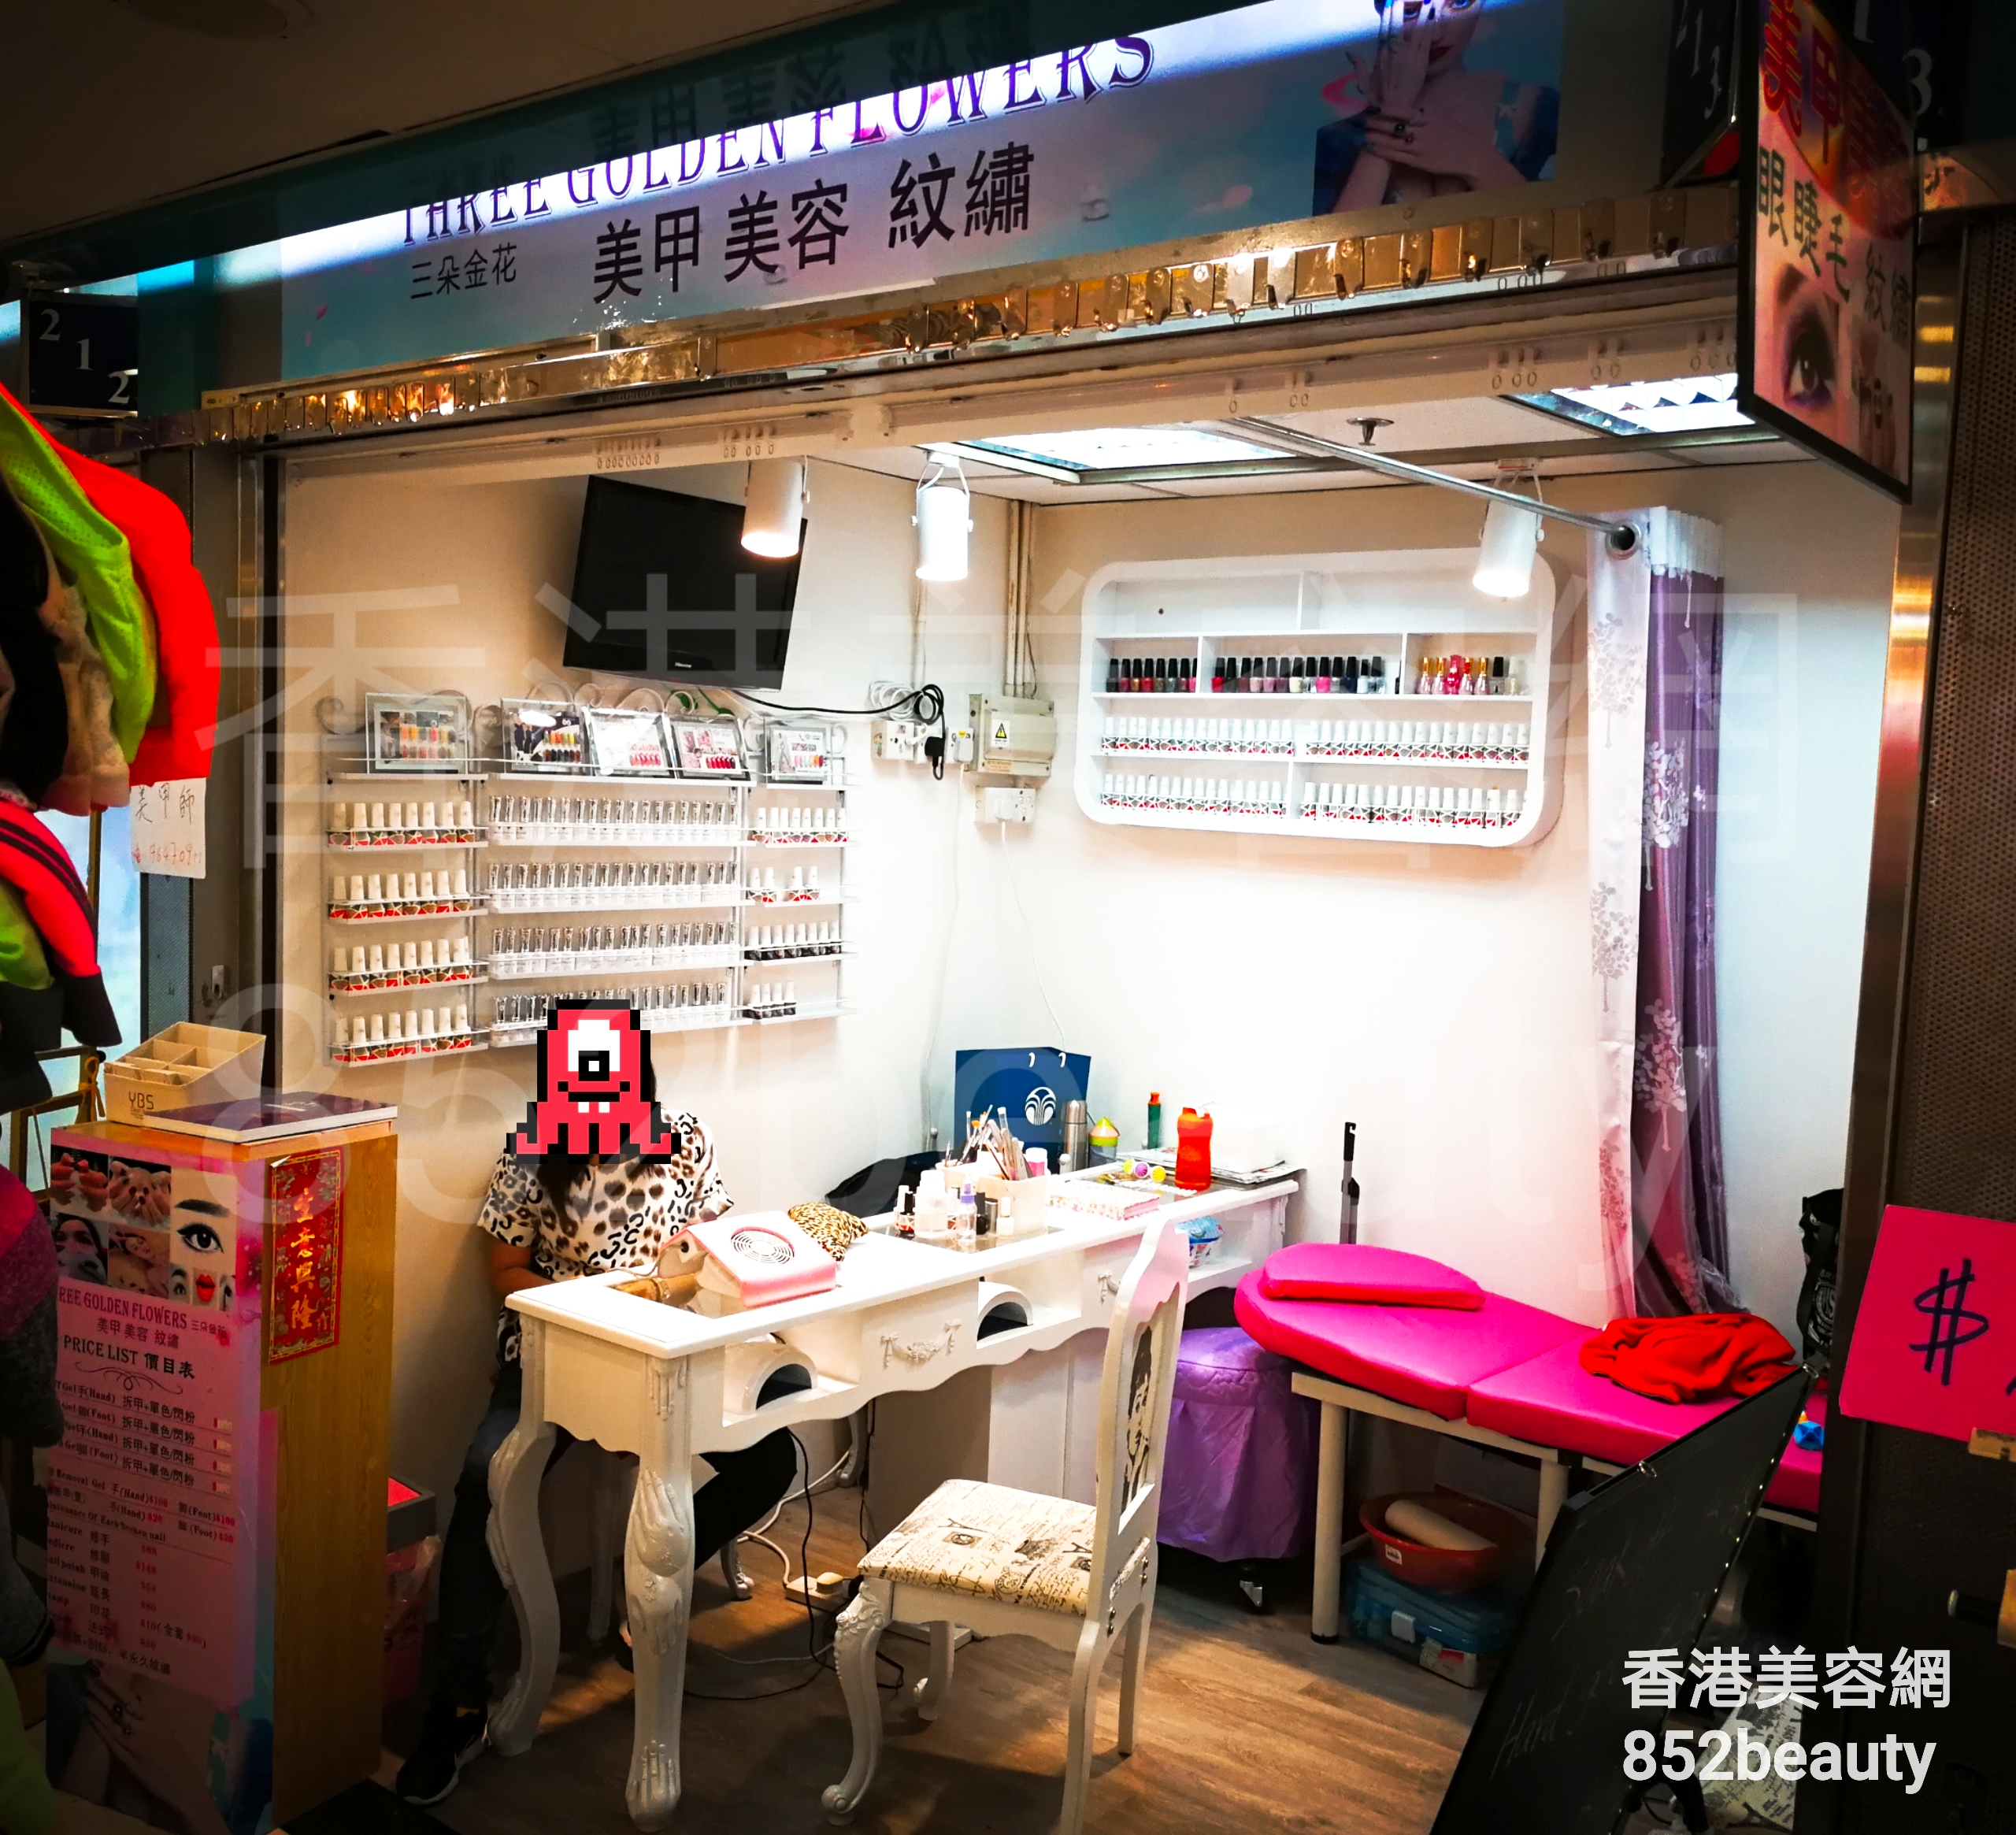 香港美容網 Hong Kong Beauty Salon 美容院 / 美容師: Three Golden Flowers 三朵金花